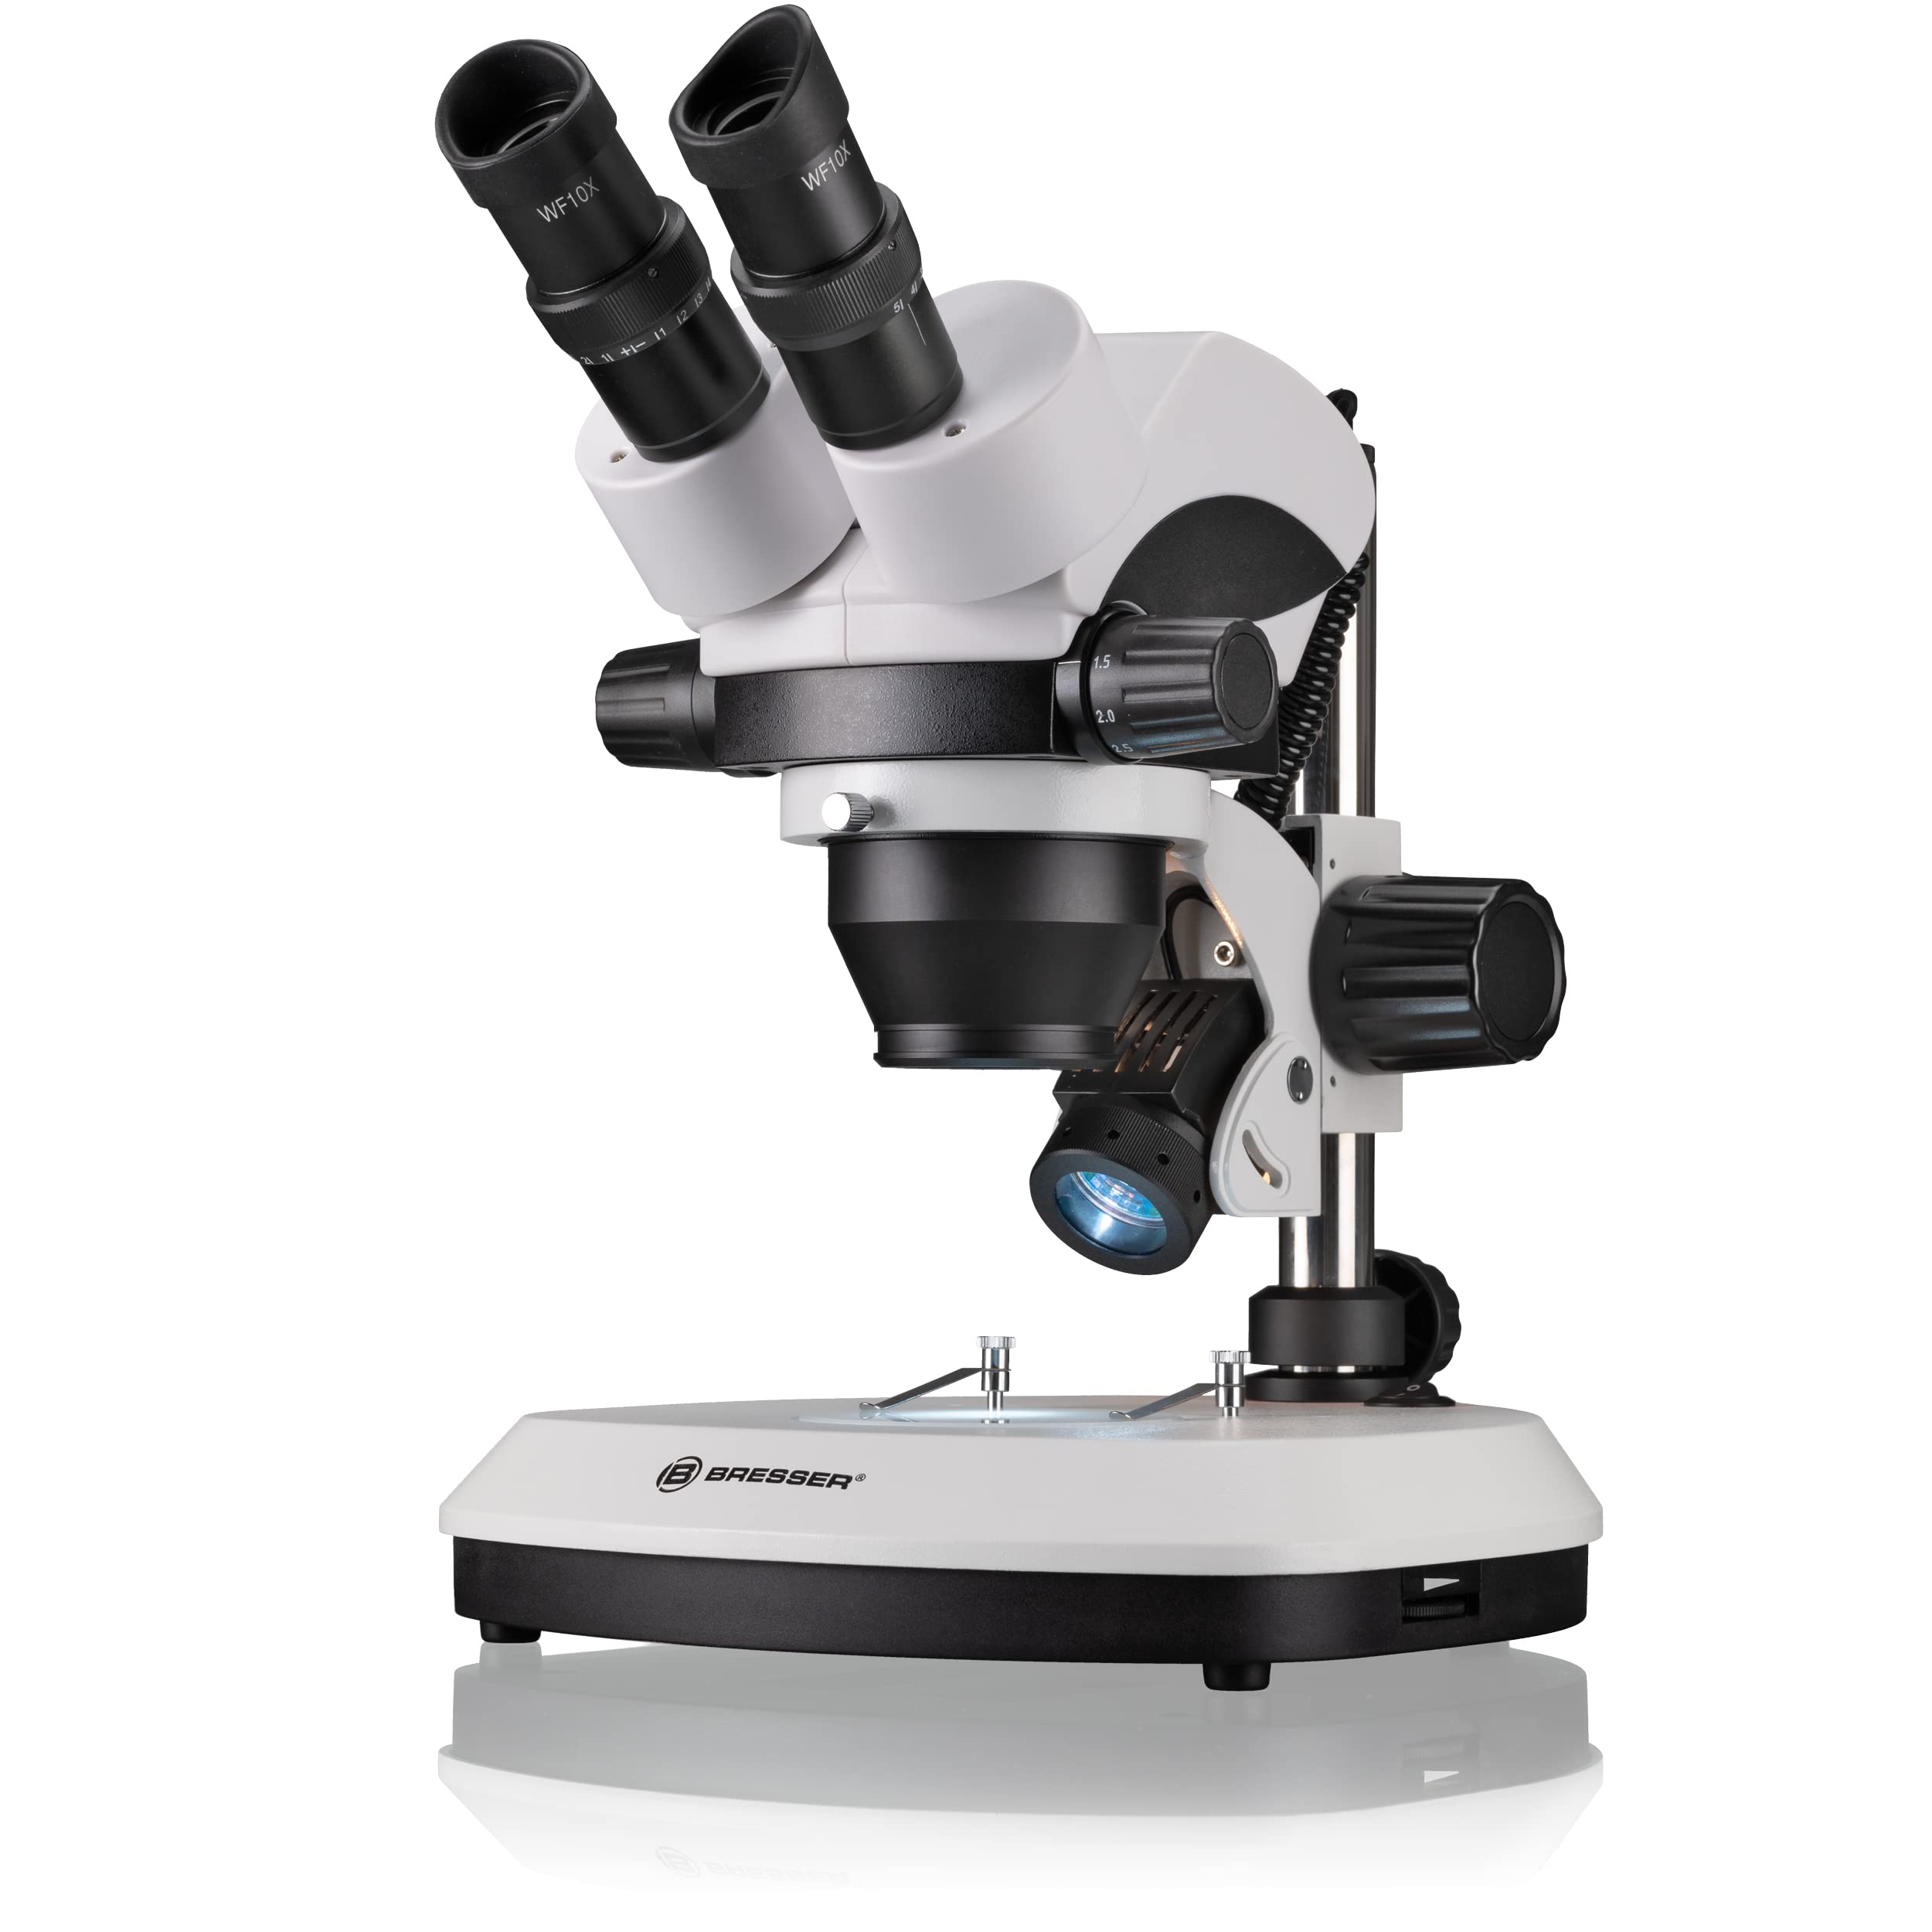 Bresser 3D Stereo Auflicht und Durchlicht Mikroskop Science ETD-101 mit 7-45x Vergrößerung, 360° drehbarem binokularem Mikroskopkopf, Stereo-Zoomobjektiv und starker Halogenbeleuchtung